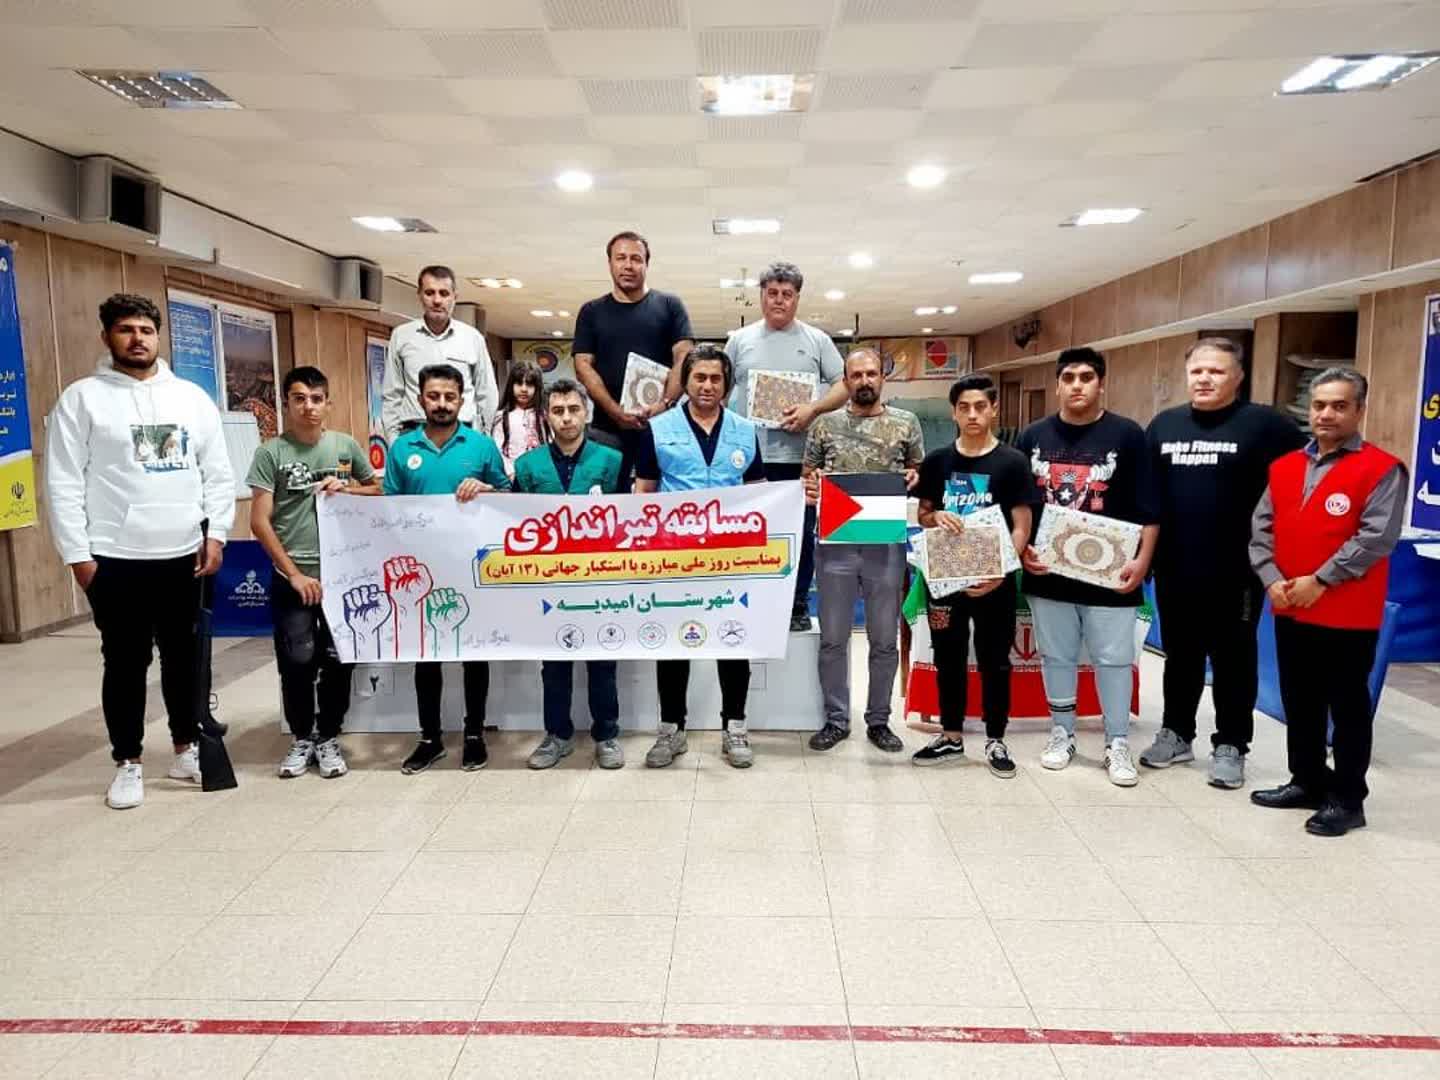 مسابقه تیراندازی به مناسبت بزرگداشت روز ۱۳ آبان در شهرستان امیدیه